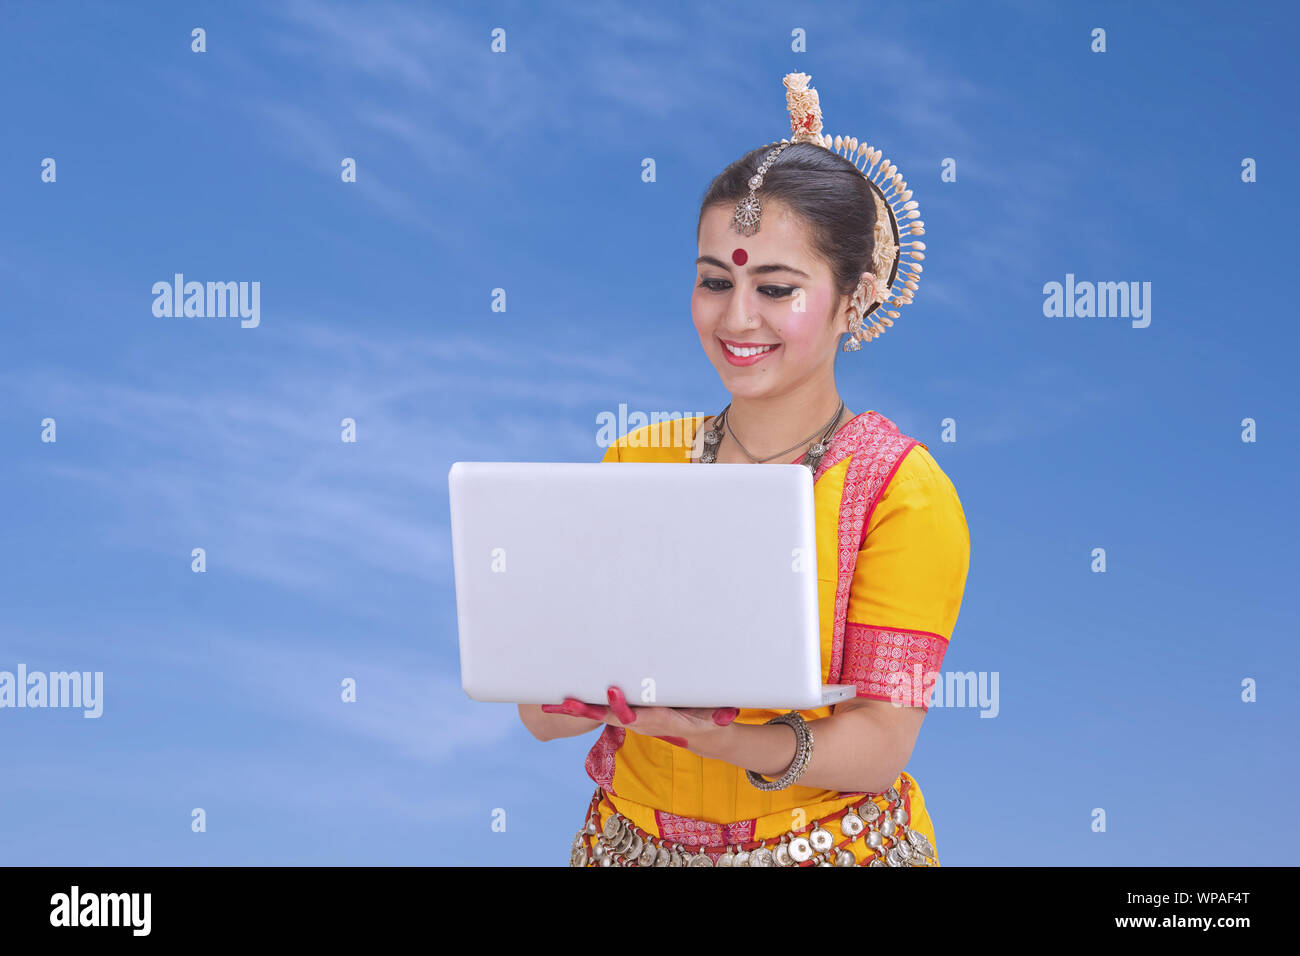 Junge Frau auf einem Laptop arbeiten Stockfoto